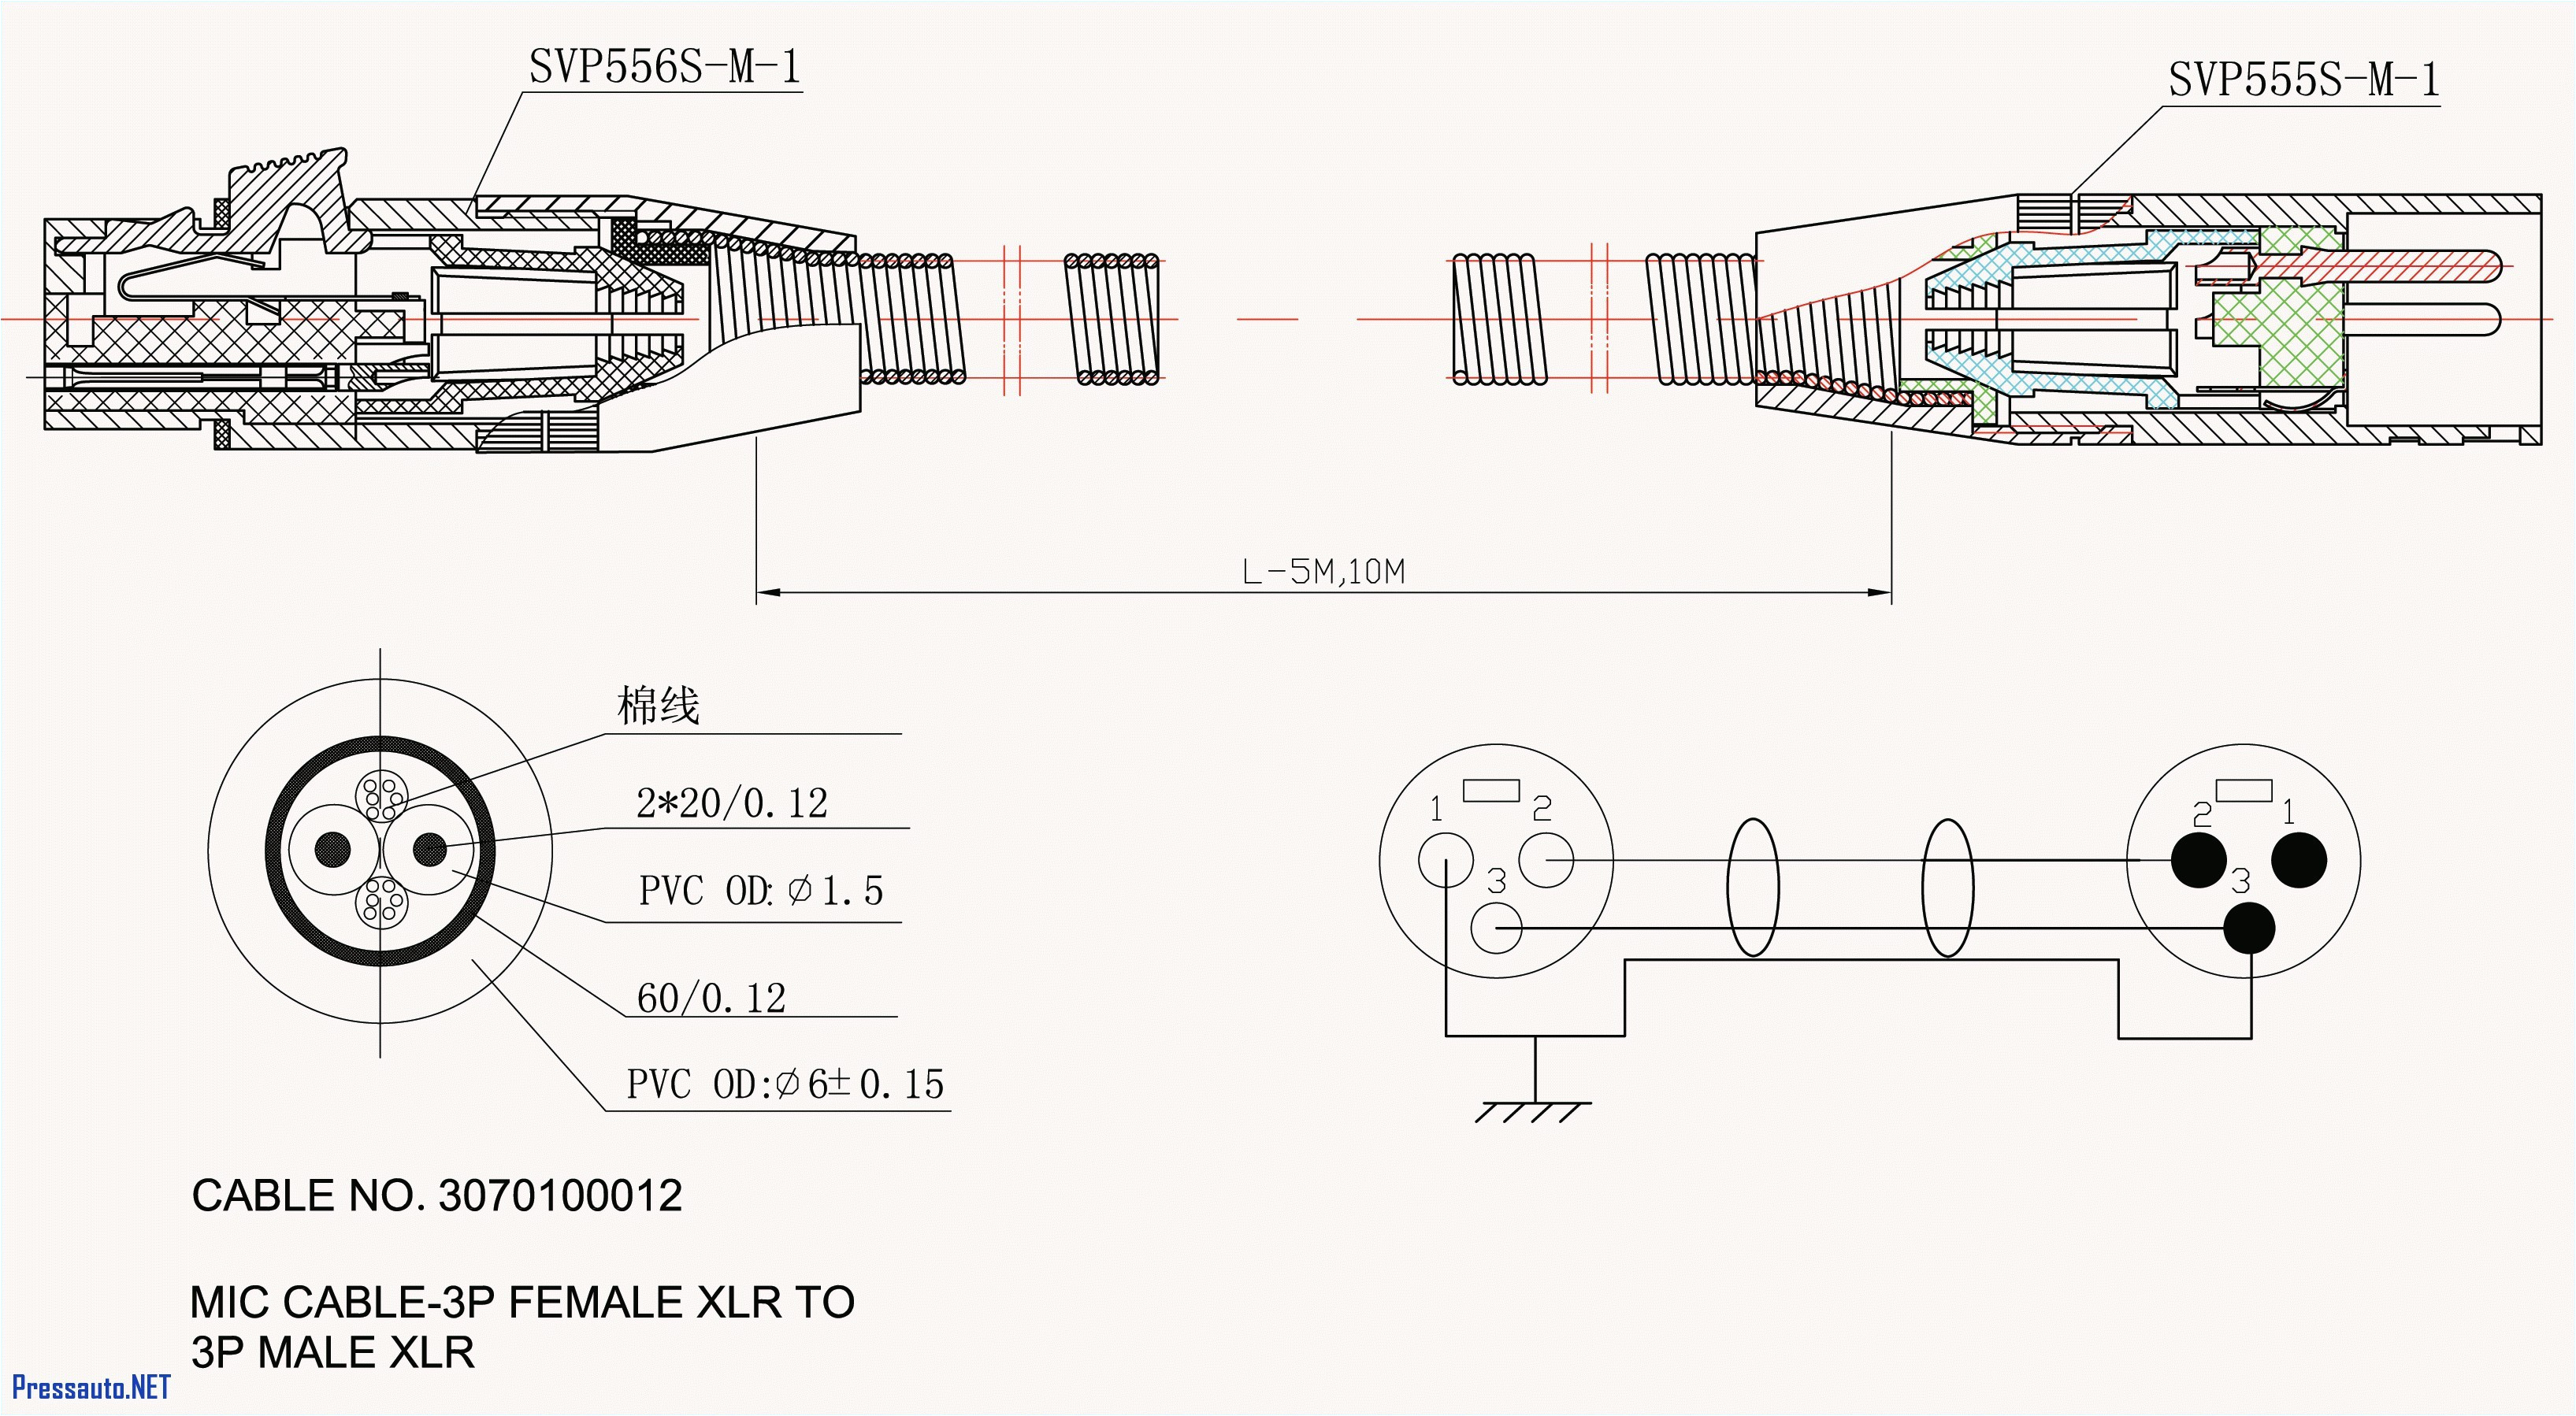 chrysler 318 wiring diagram wiring diagram database 318 engine wiring diagram